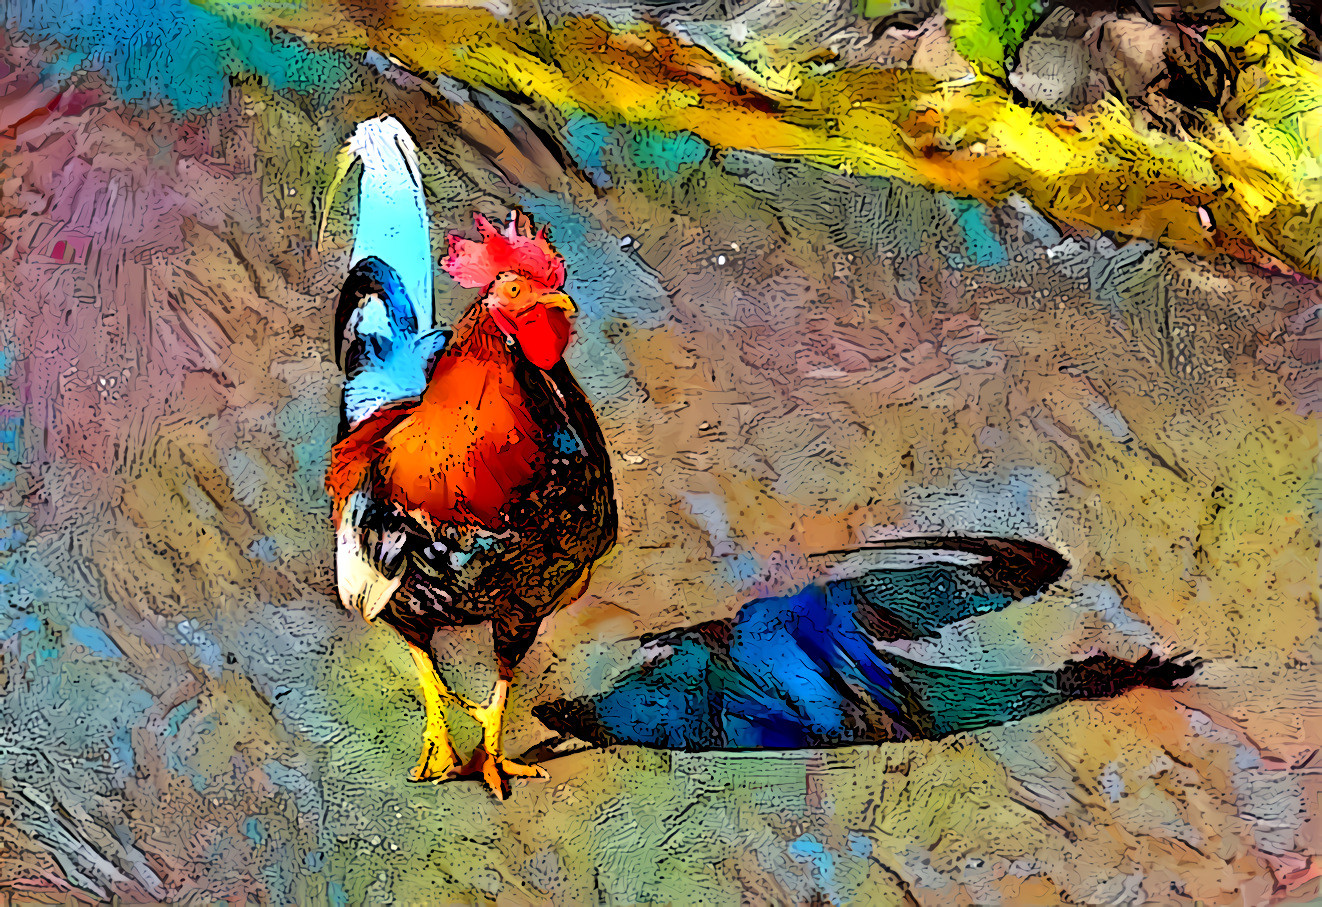 Kauai Rooster